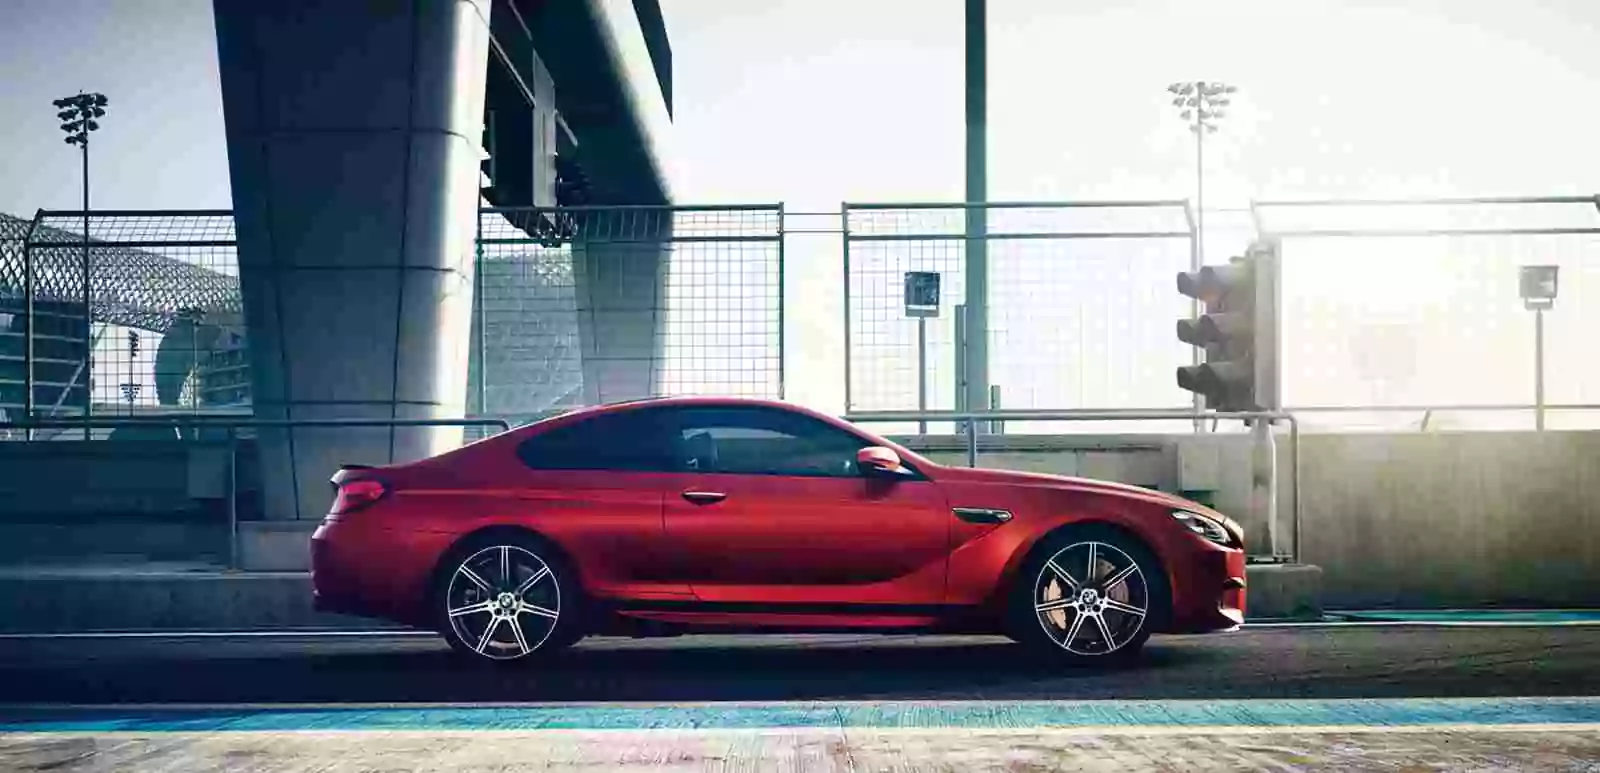 BMW M6 Hire Price In Dubai 